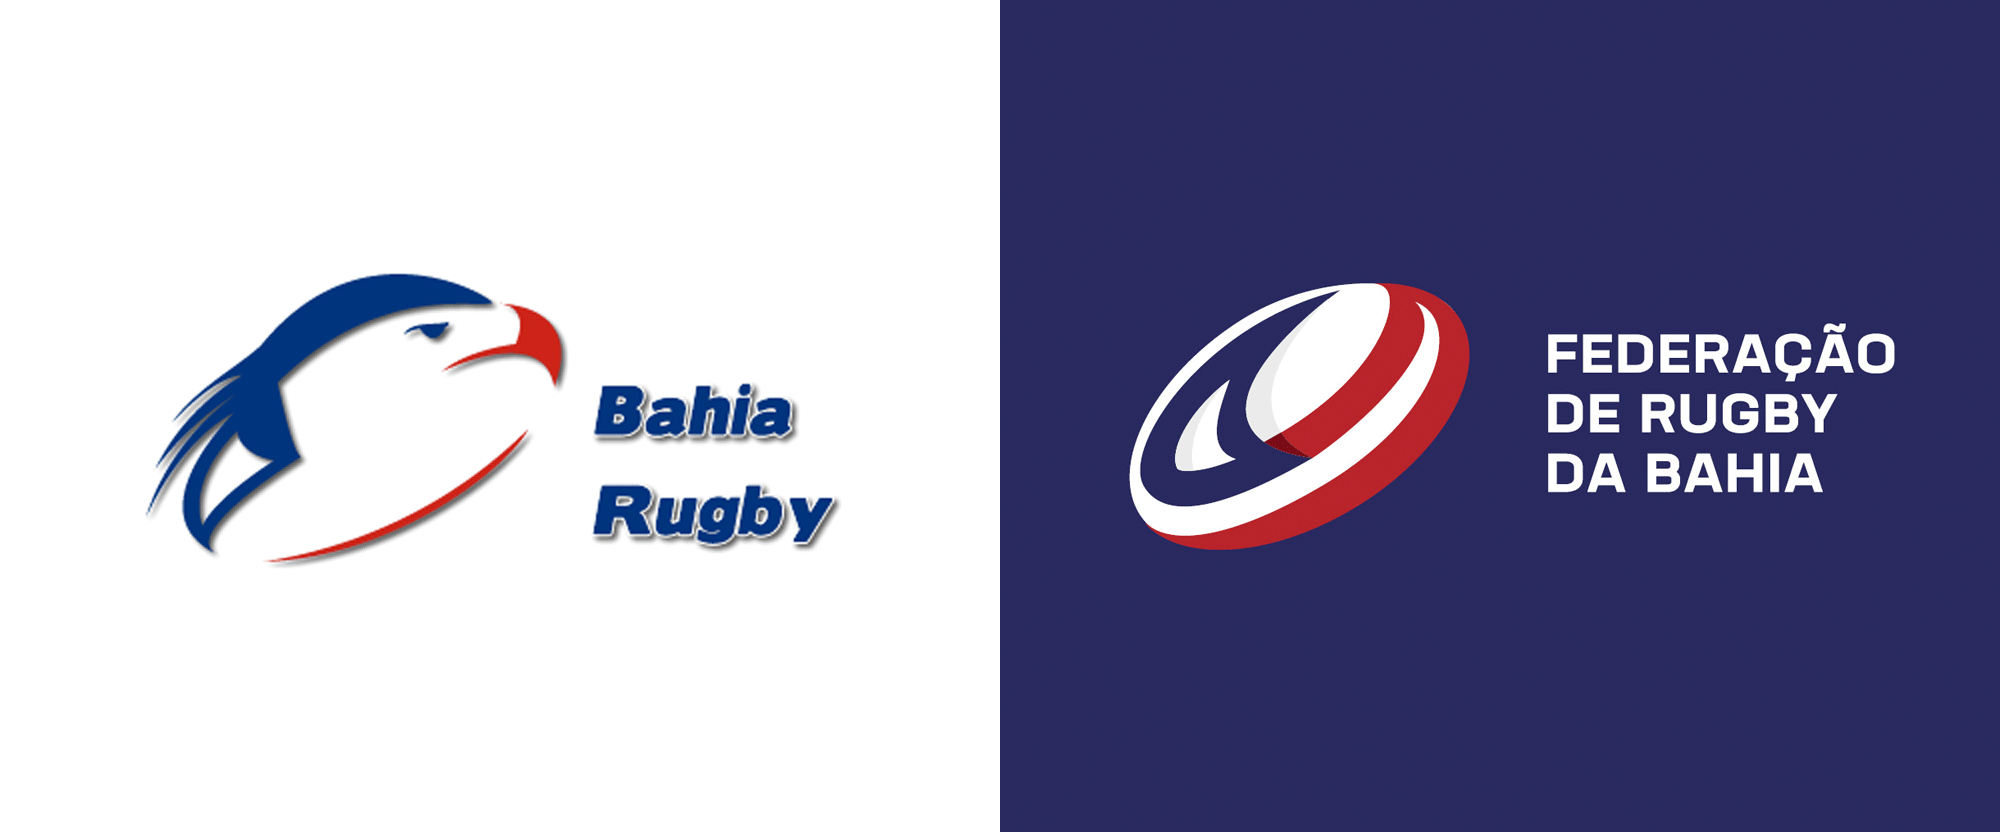 New Logo for Federação de Rugby da Bahia by Nacione